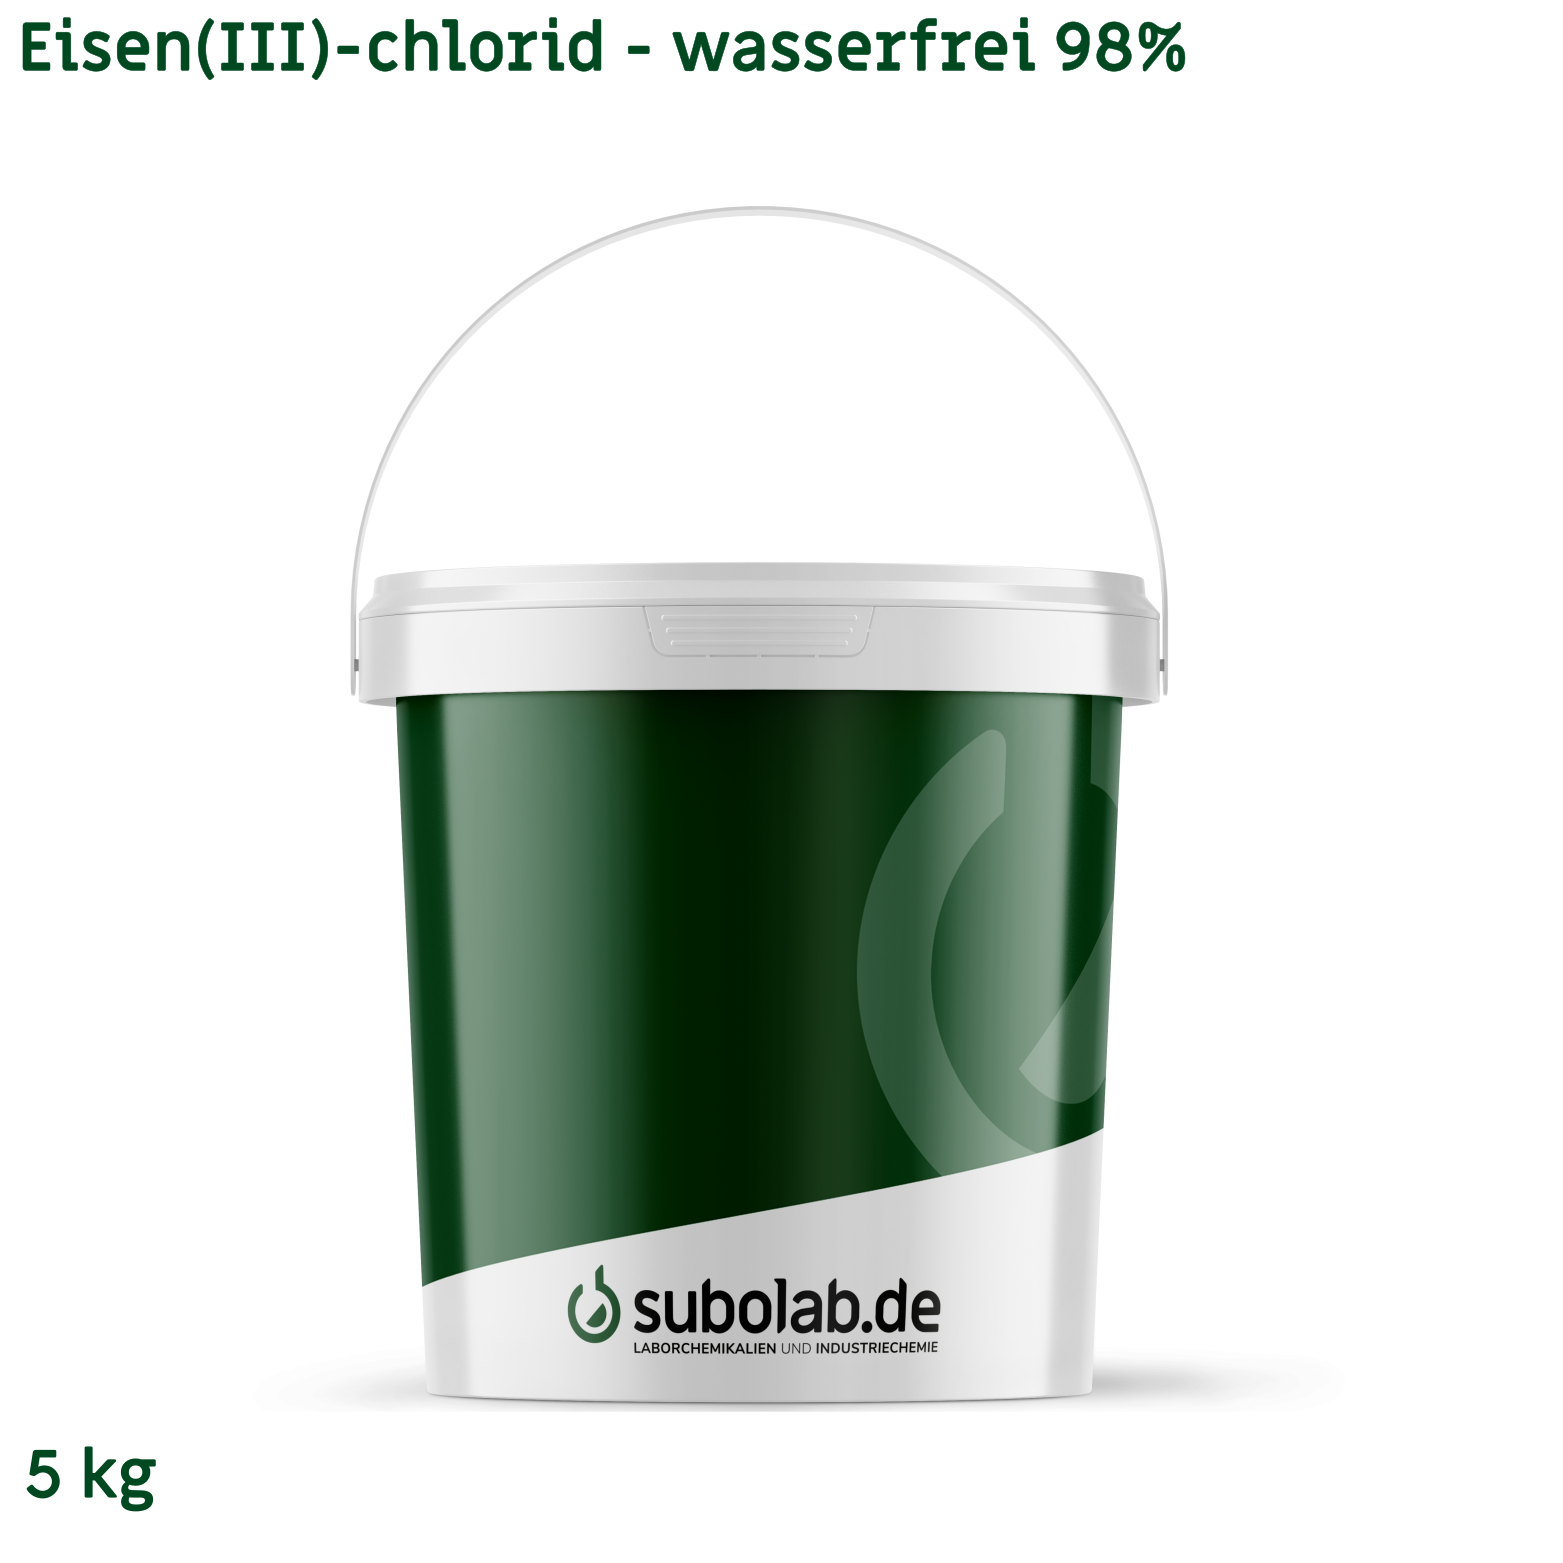 Bild von Eisen(III)-chlorid - wasserfrei 98% (5 kg)